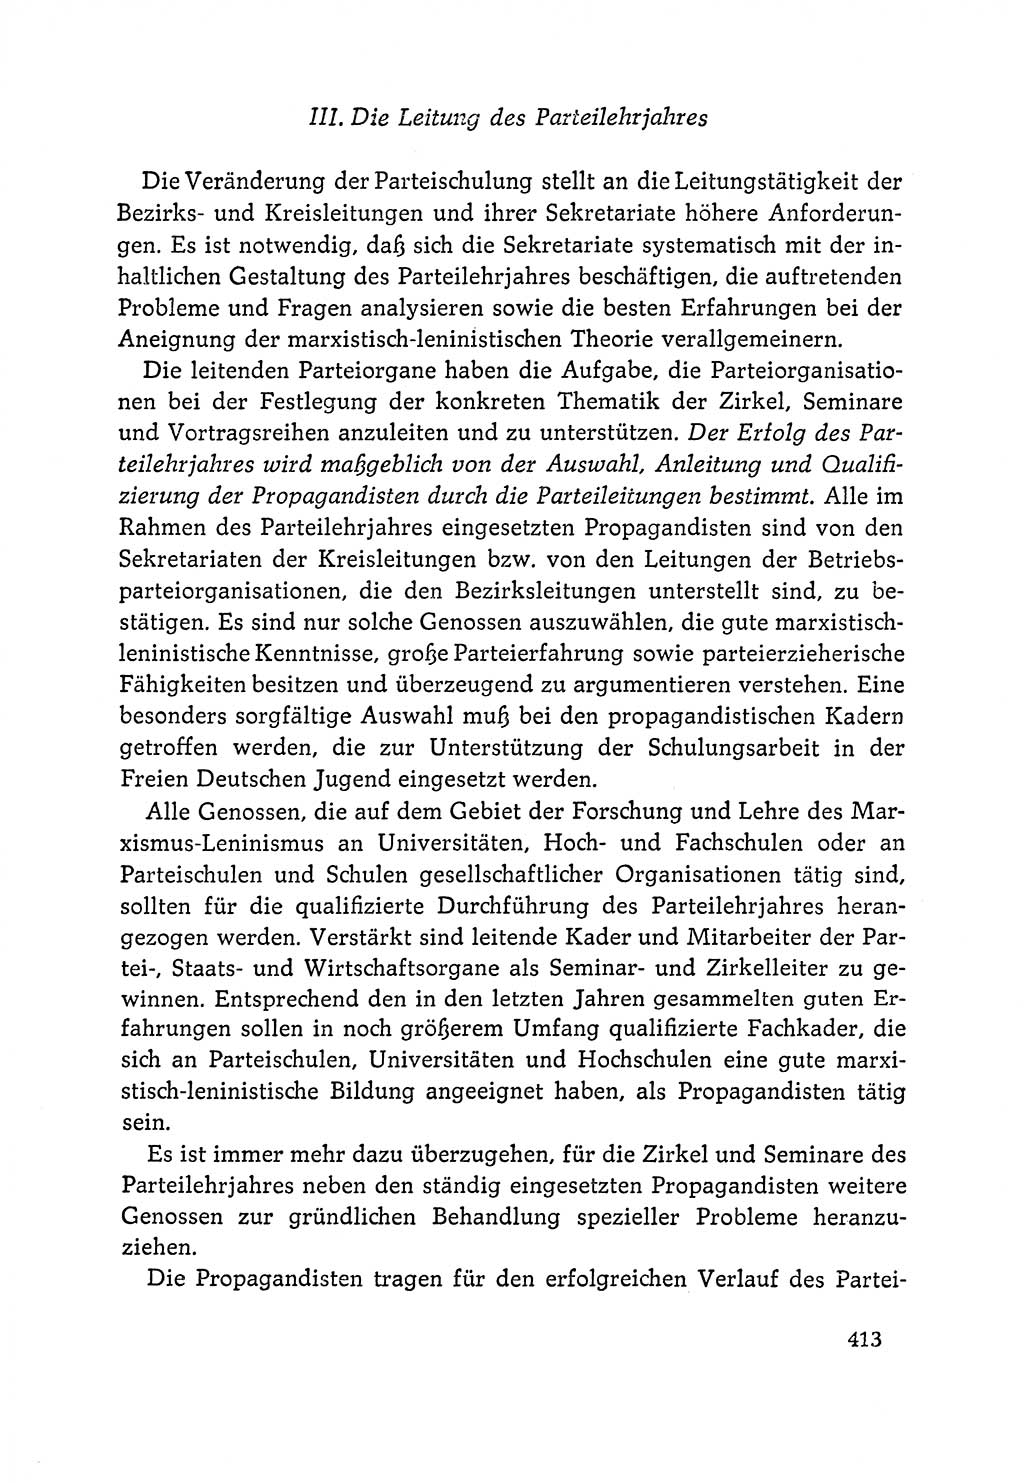 Dokumente der Sozialistischen Einheitspartei Deutschlands (SED) [Deutsche Demokratische Republik (DDR)] 1964-1965, Seite 413 (Dok. SED DDR 1964-1965, S. 413)